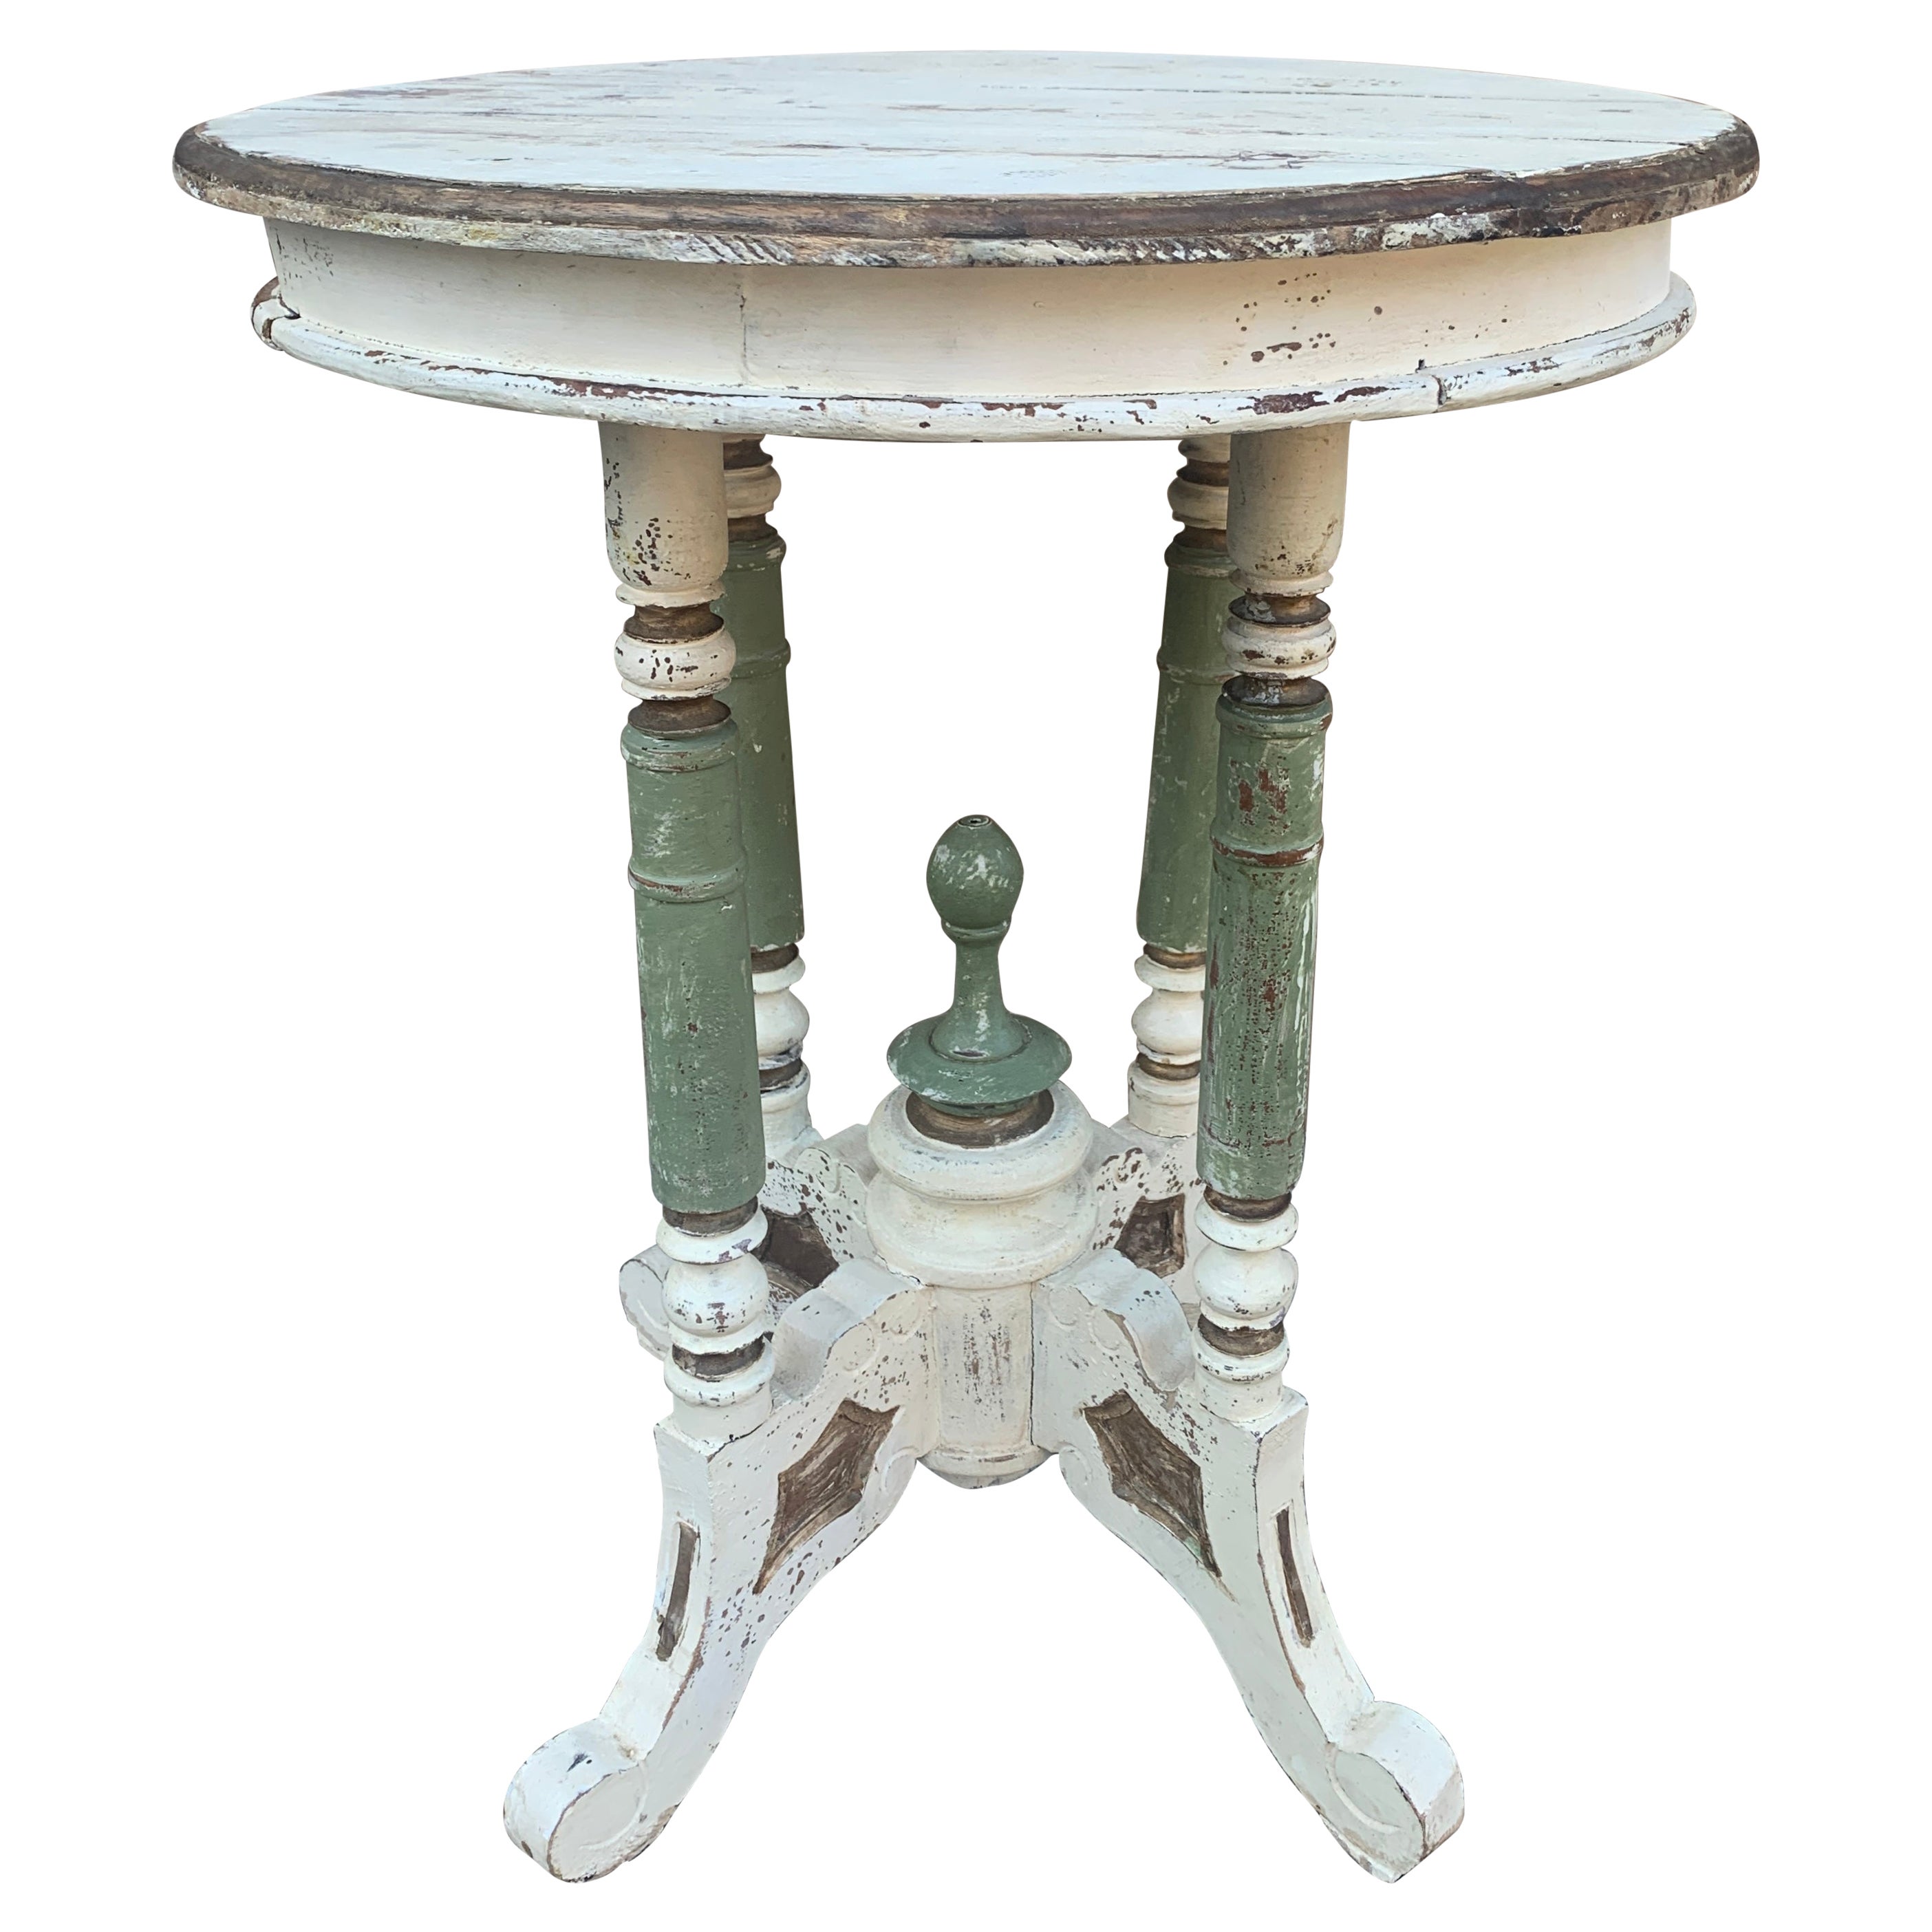 Ancienne table d'appoint victorienne ronde en noyer peint, fin du 19e siècle